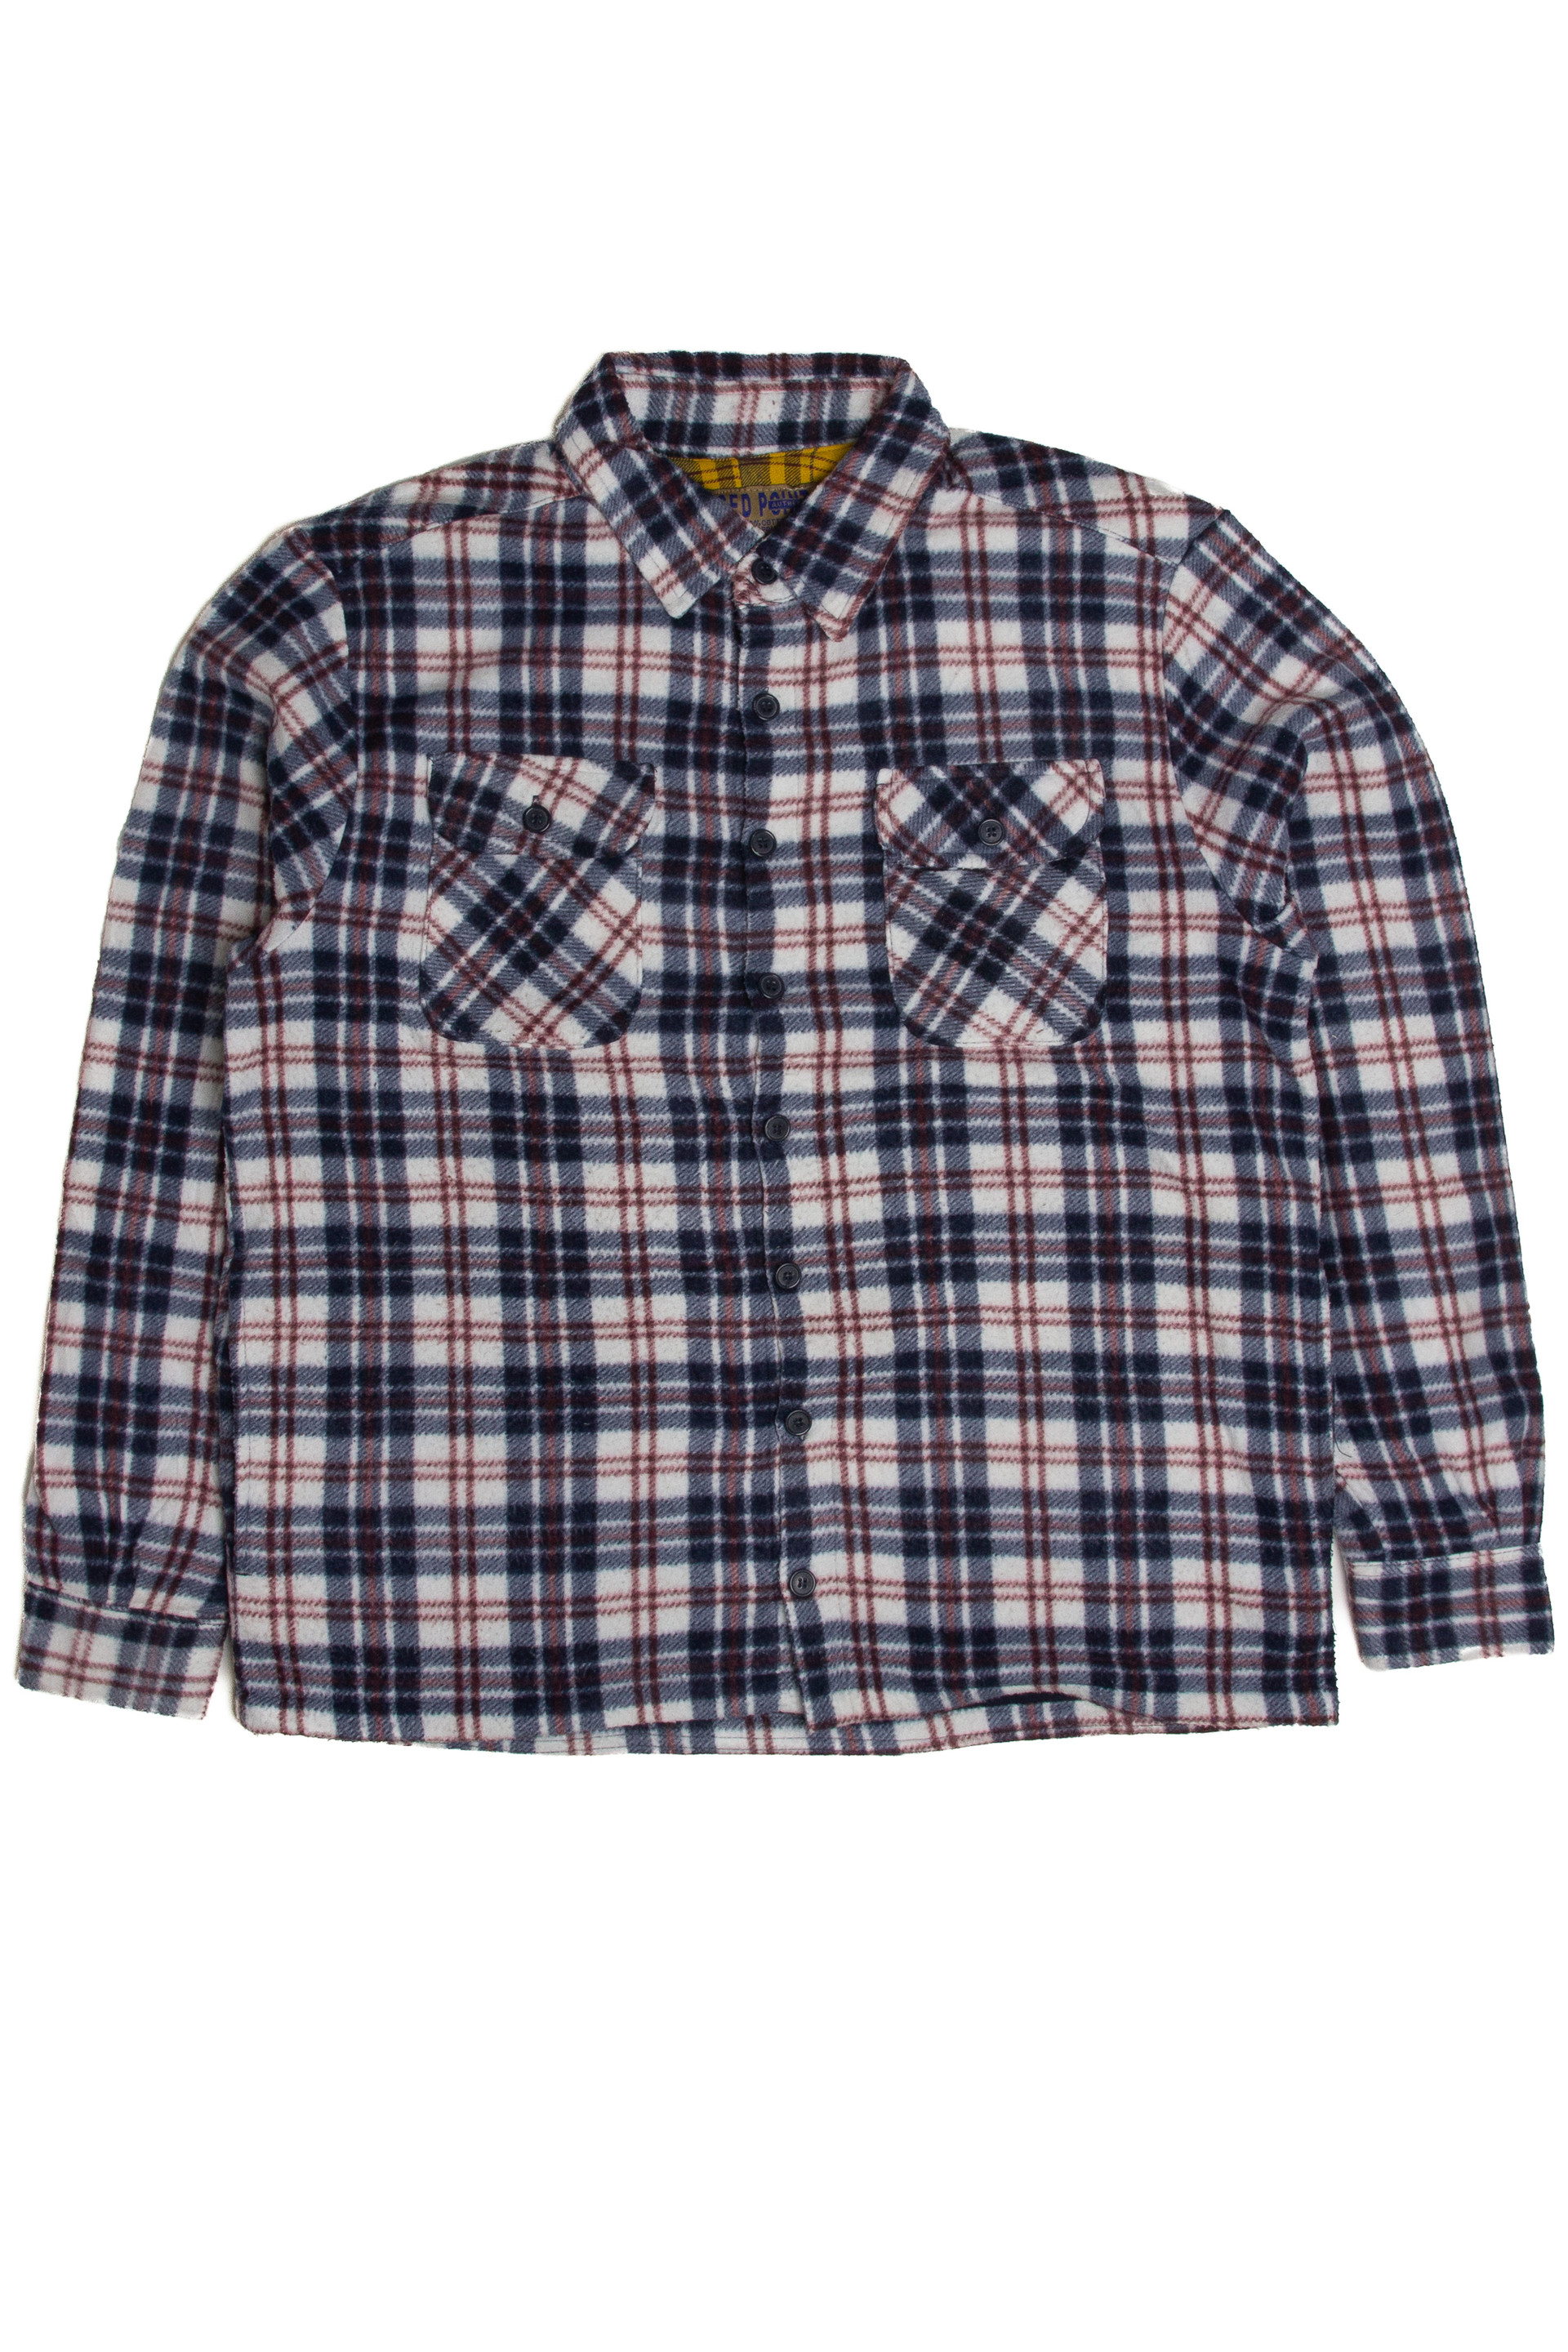 Cabela's Flannel Shirt 1 - Ragstock.com